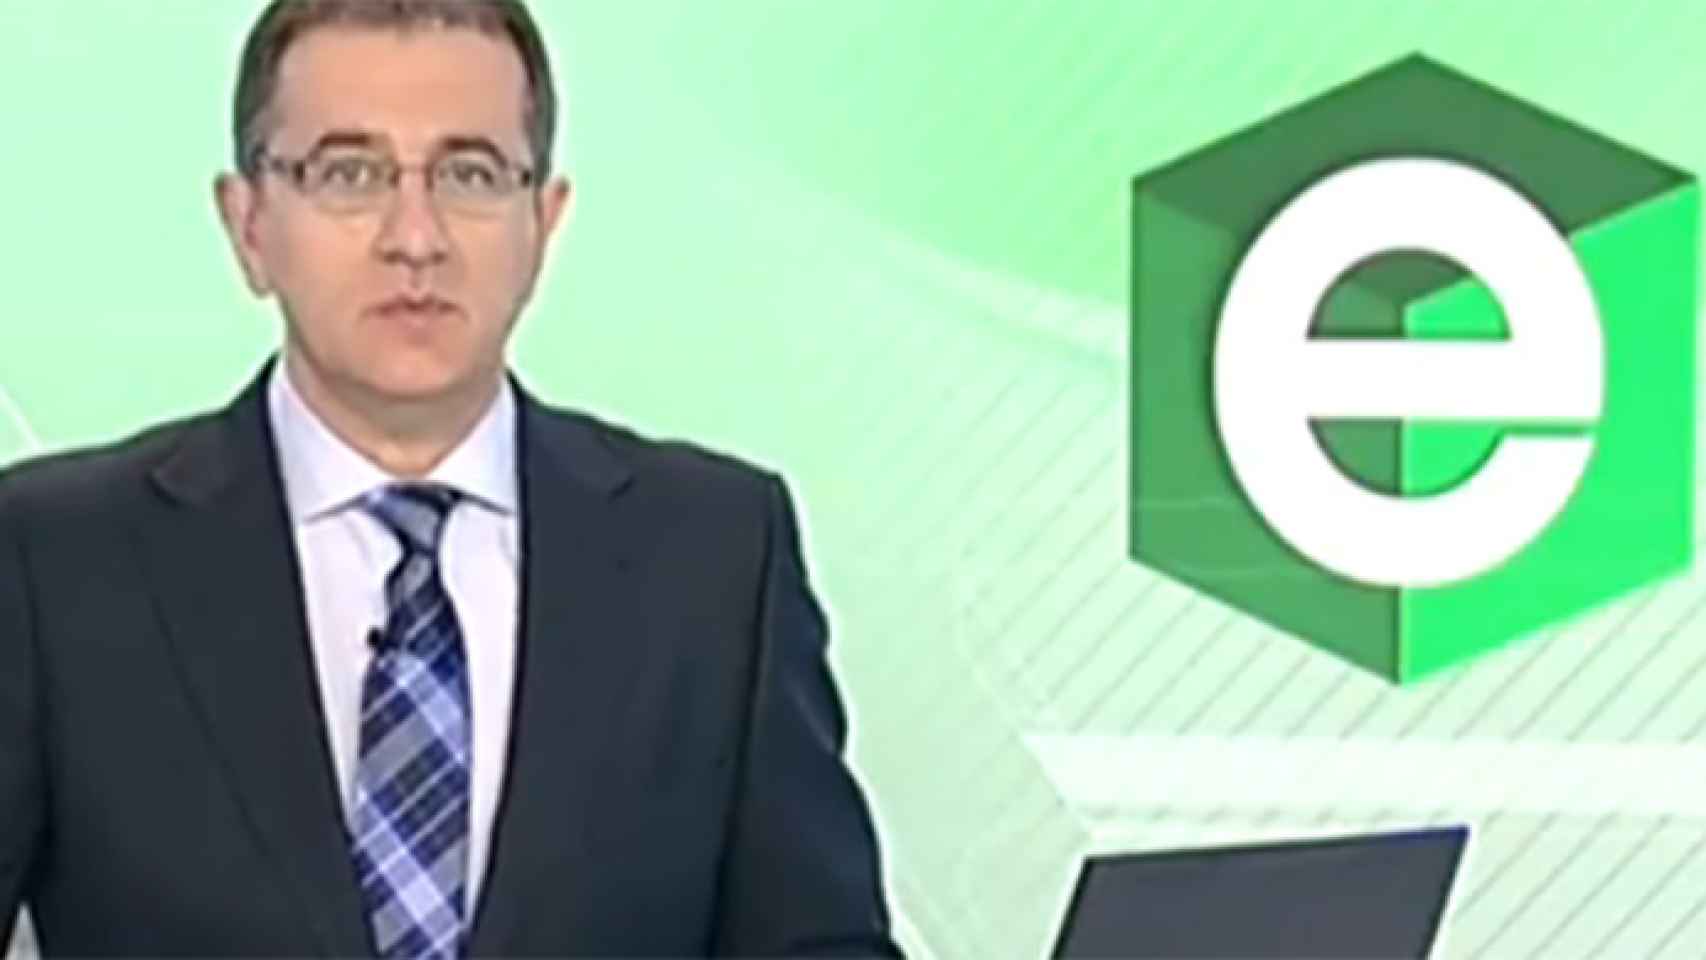 La cobertura del Telediario de TVE en las andaluzas, anclada en el bipartidismo